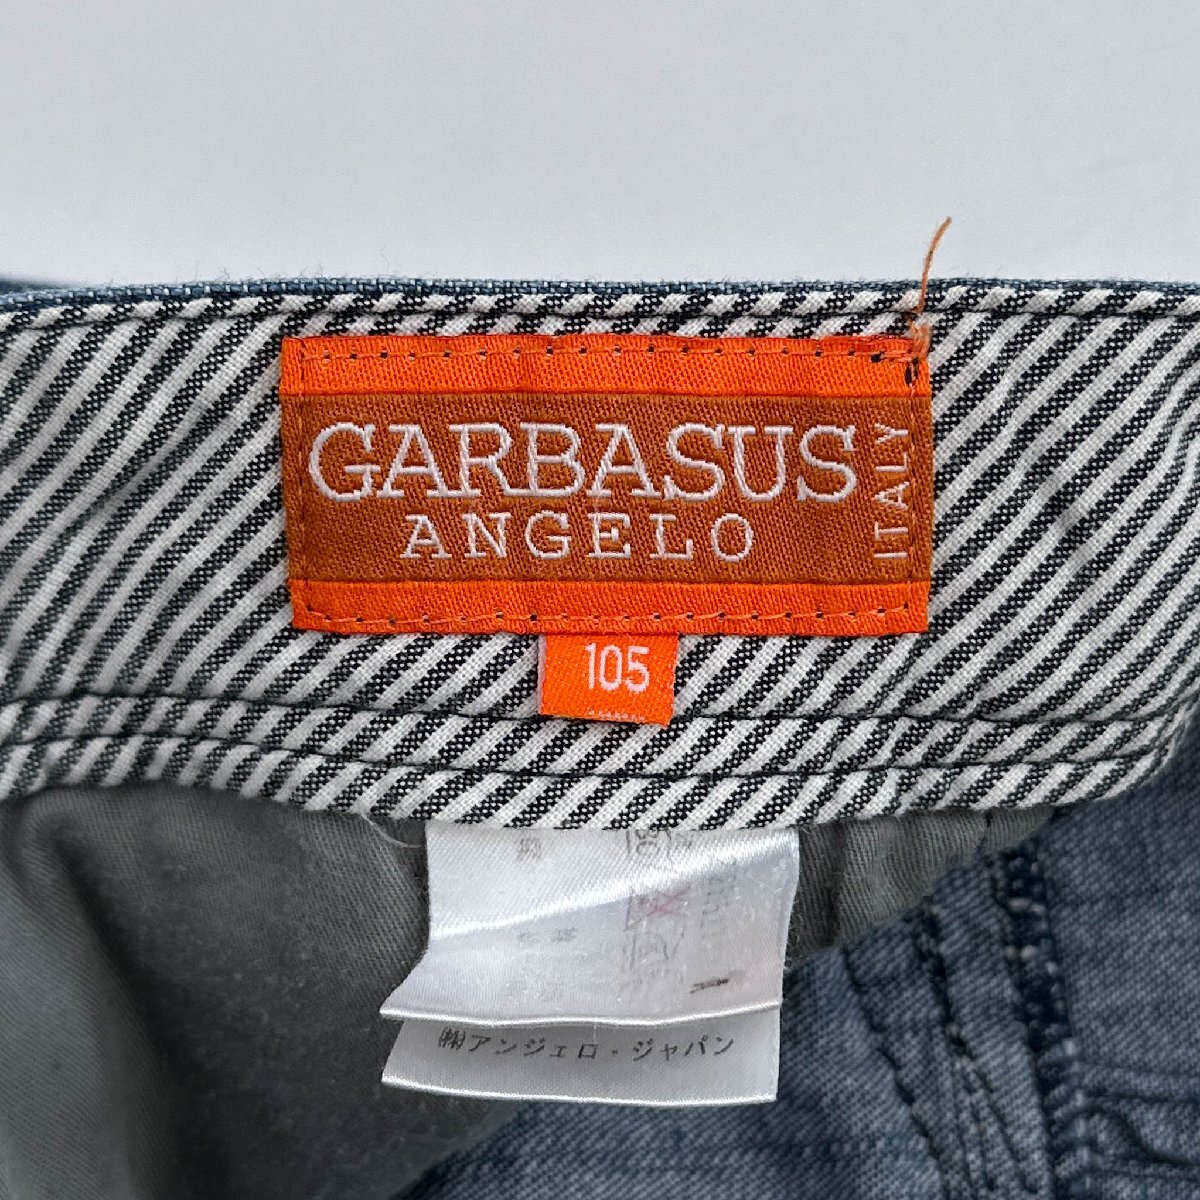 ANGELO GARBASUS アンジェロガルバス デニムパンツ ジーパン ボトムス 105 /インディゴ/メンズ/大きいサイズ_画像7